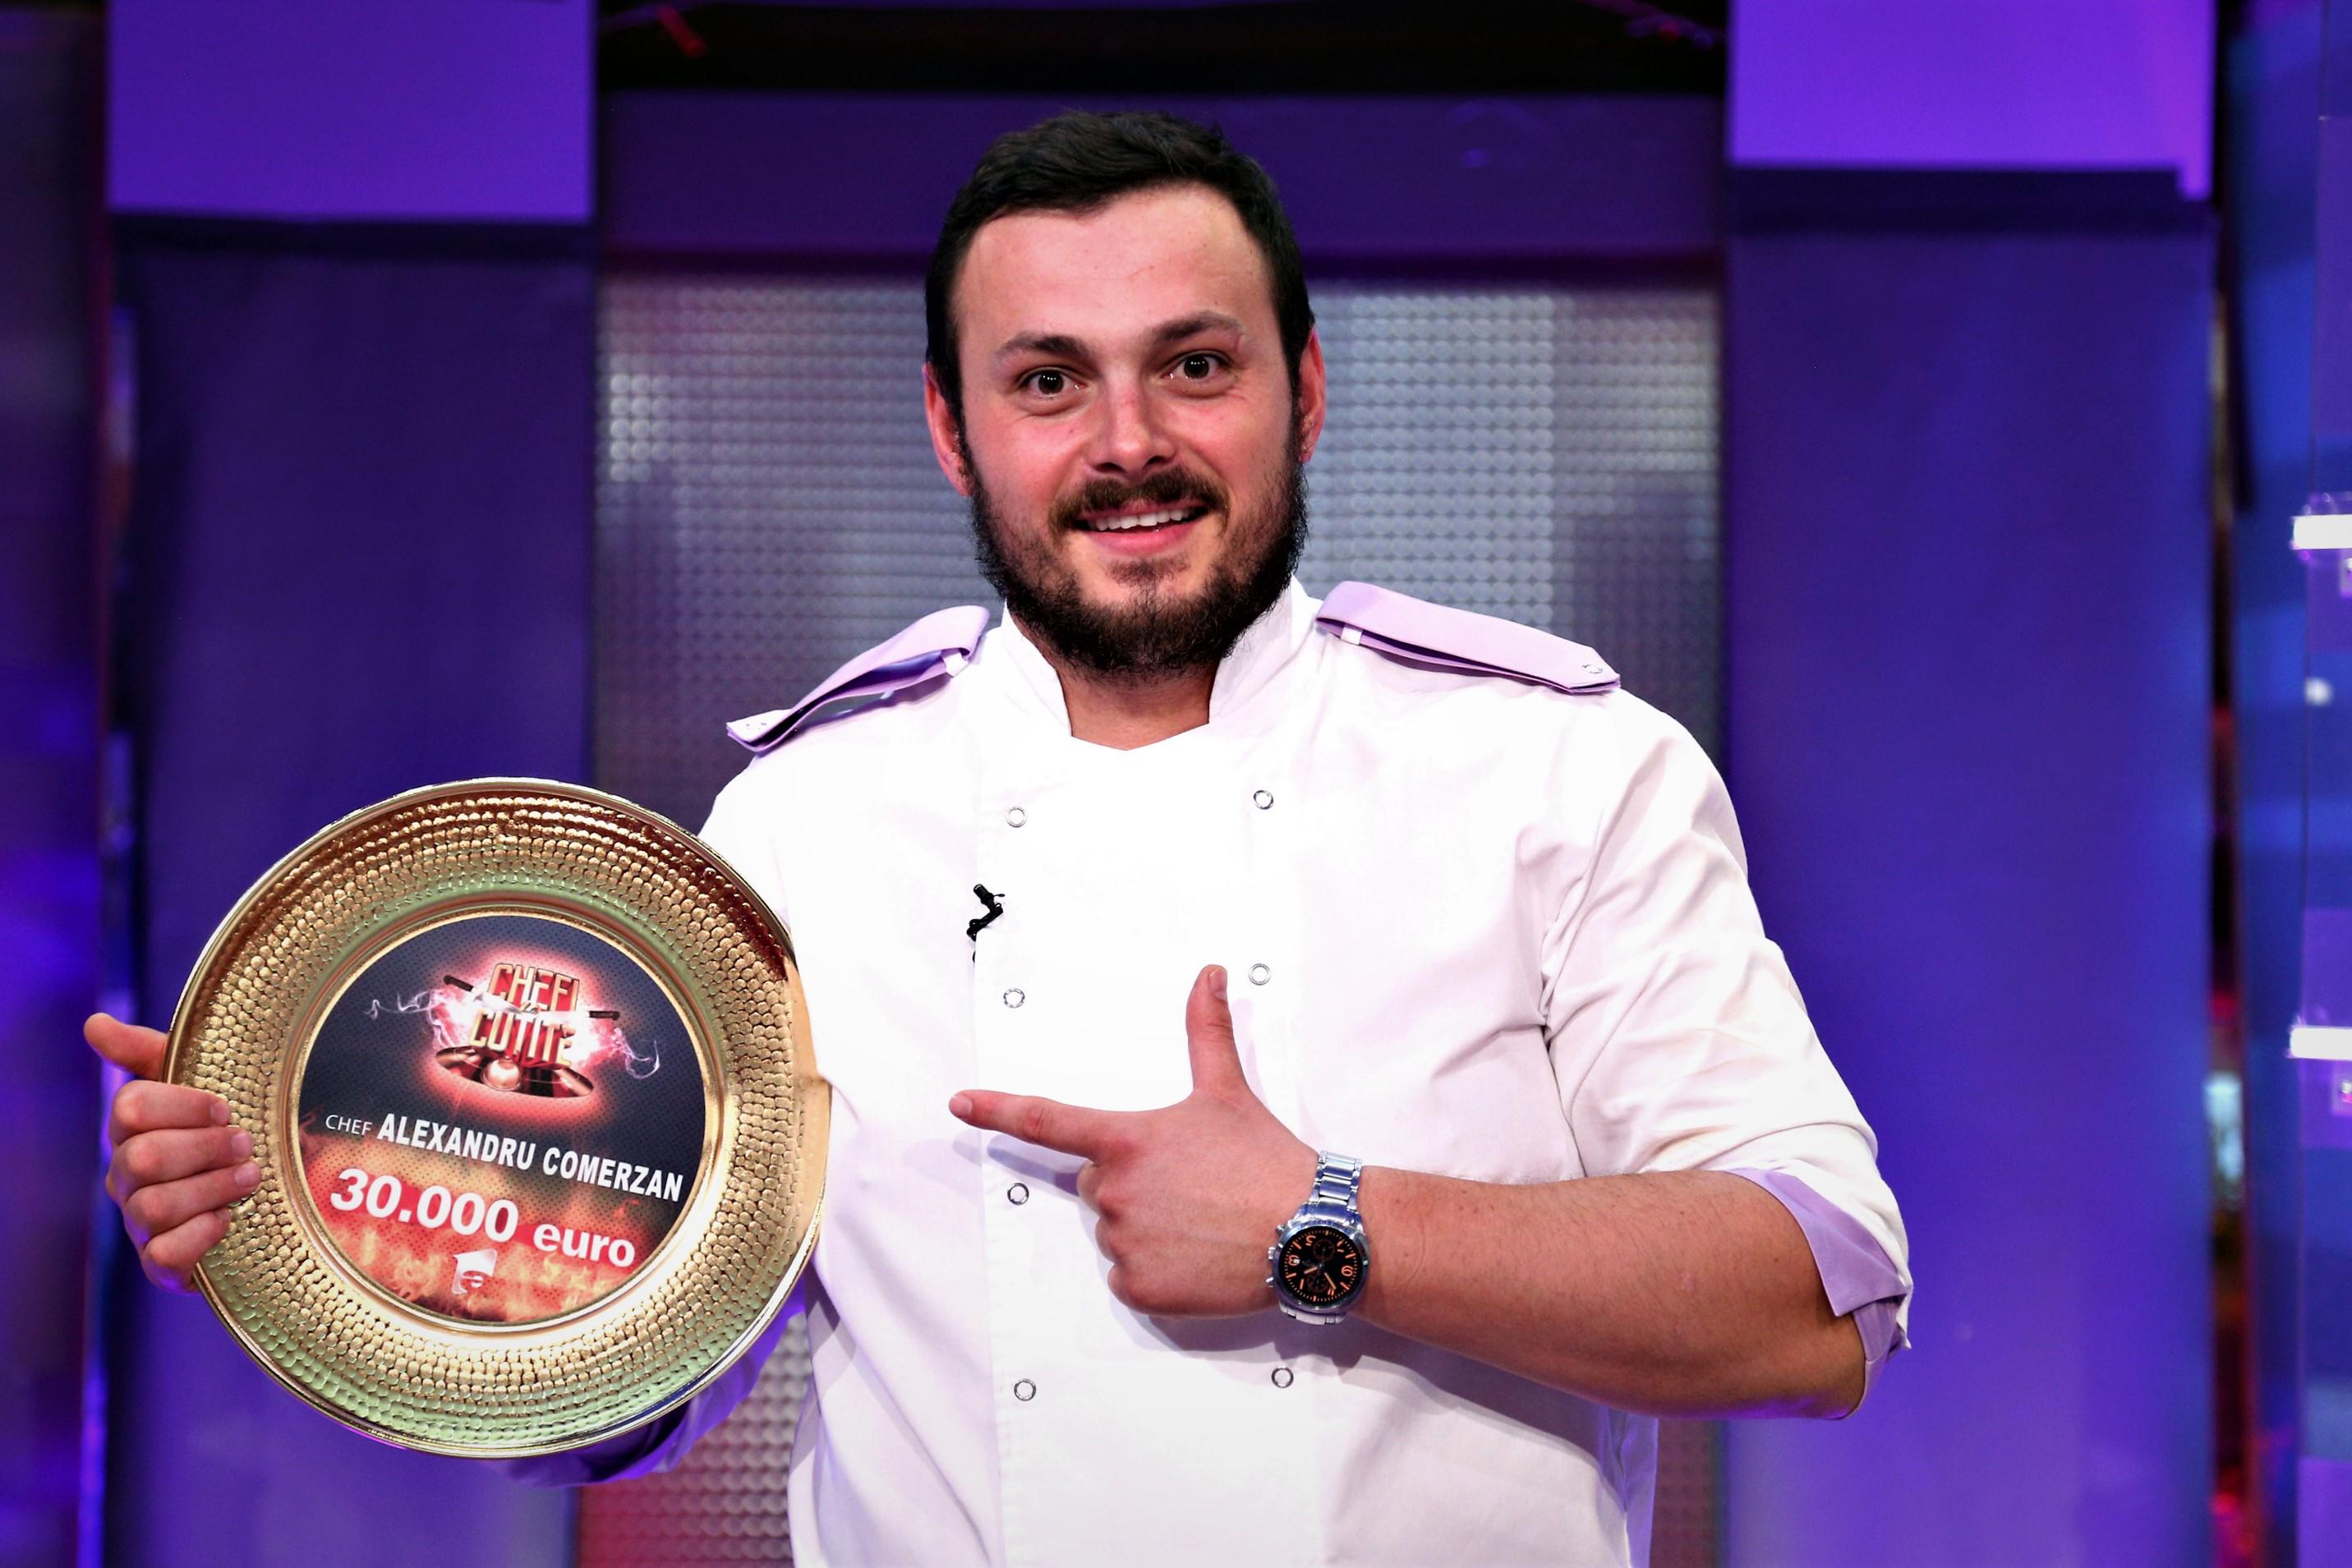 A anunțat! Ce va face Alexandru Comerzan, câștigătorul sezonului 7 Chefi la cuțite, cu cei 30.000 de euro